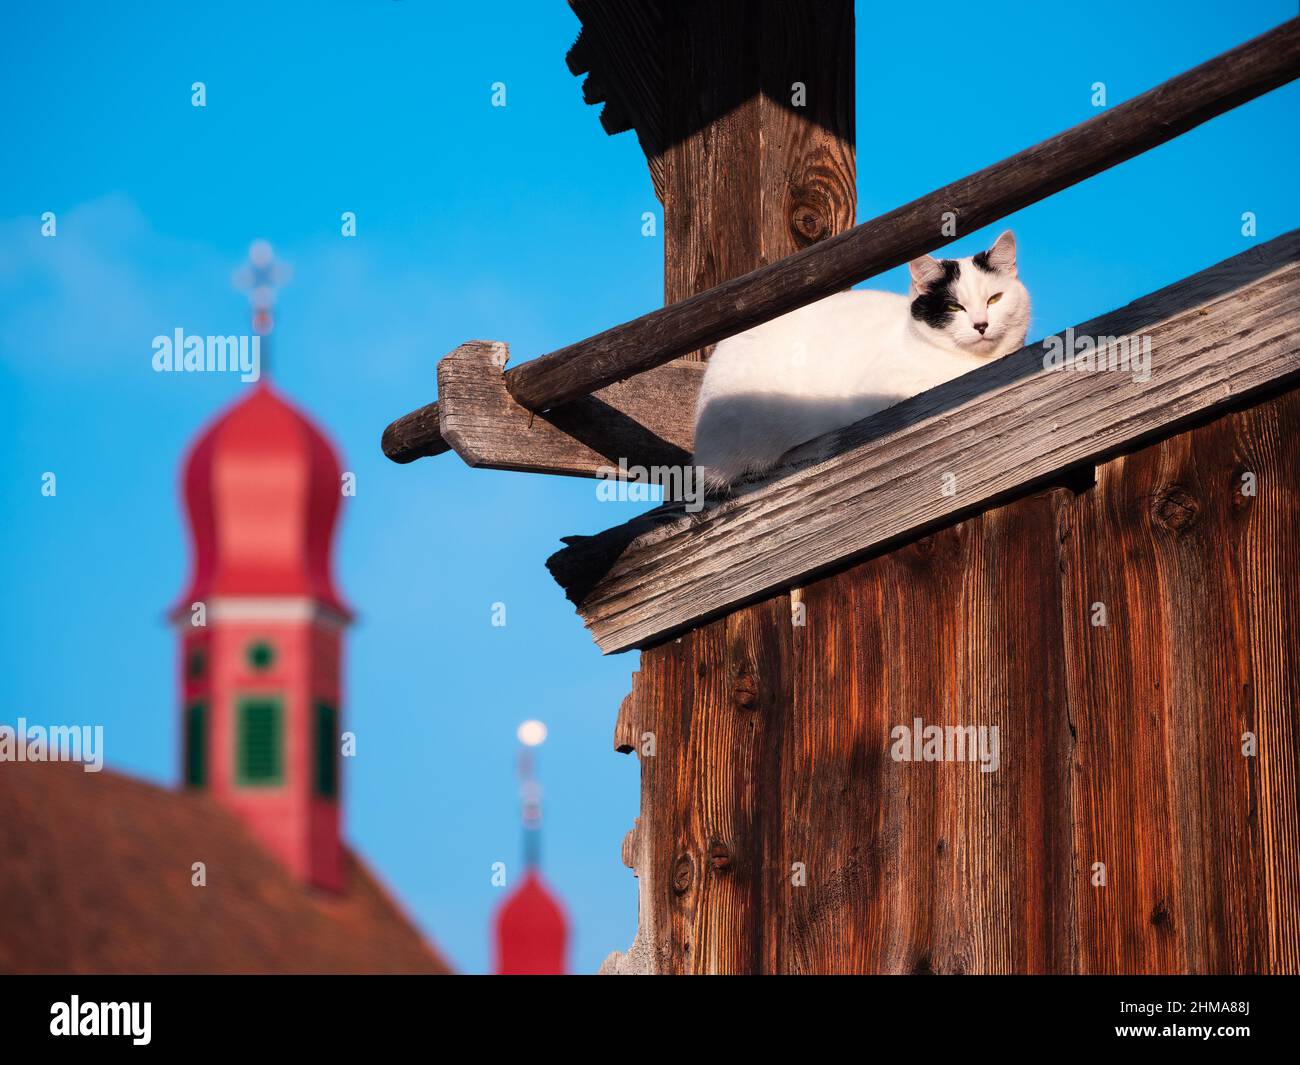 Un gato en la parte superior del edificio de madera y las torres de campana borrosas de la iglesia de Flueli-Ranft, Suiza en el fondo Foto de stock